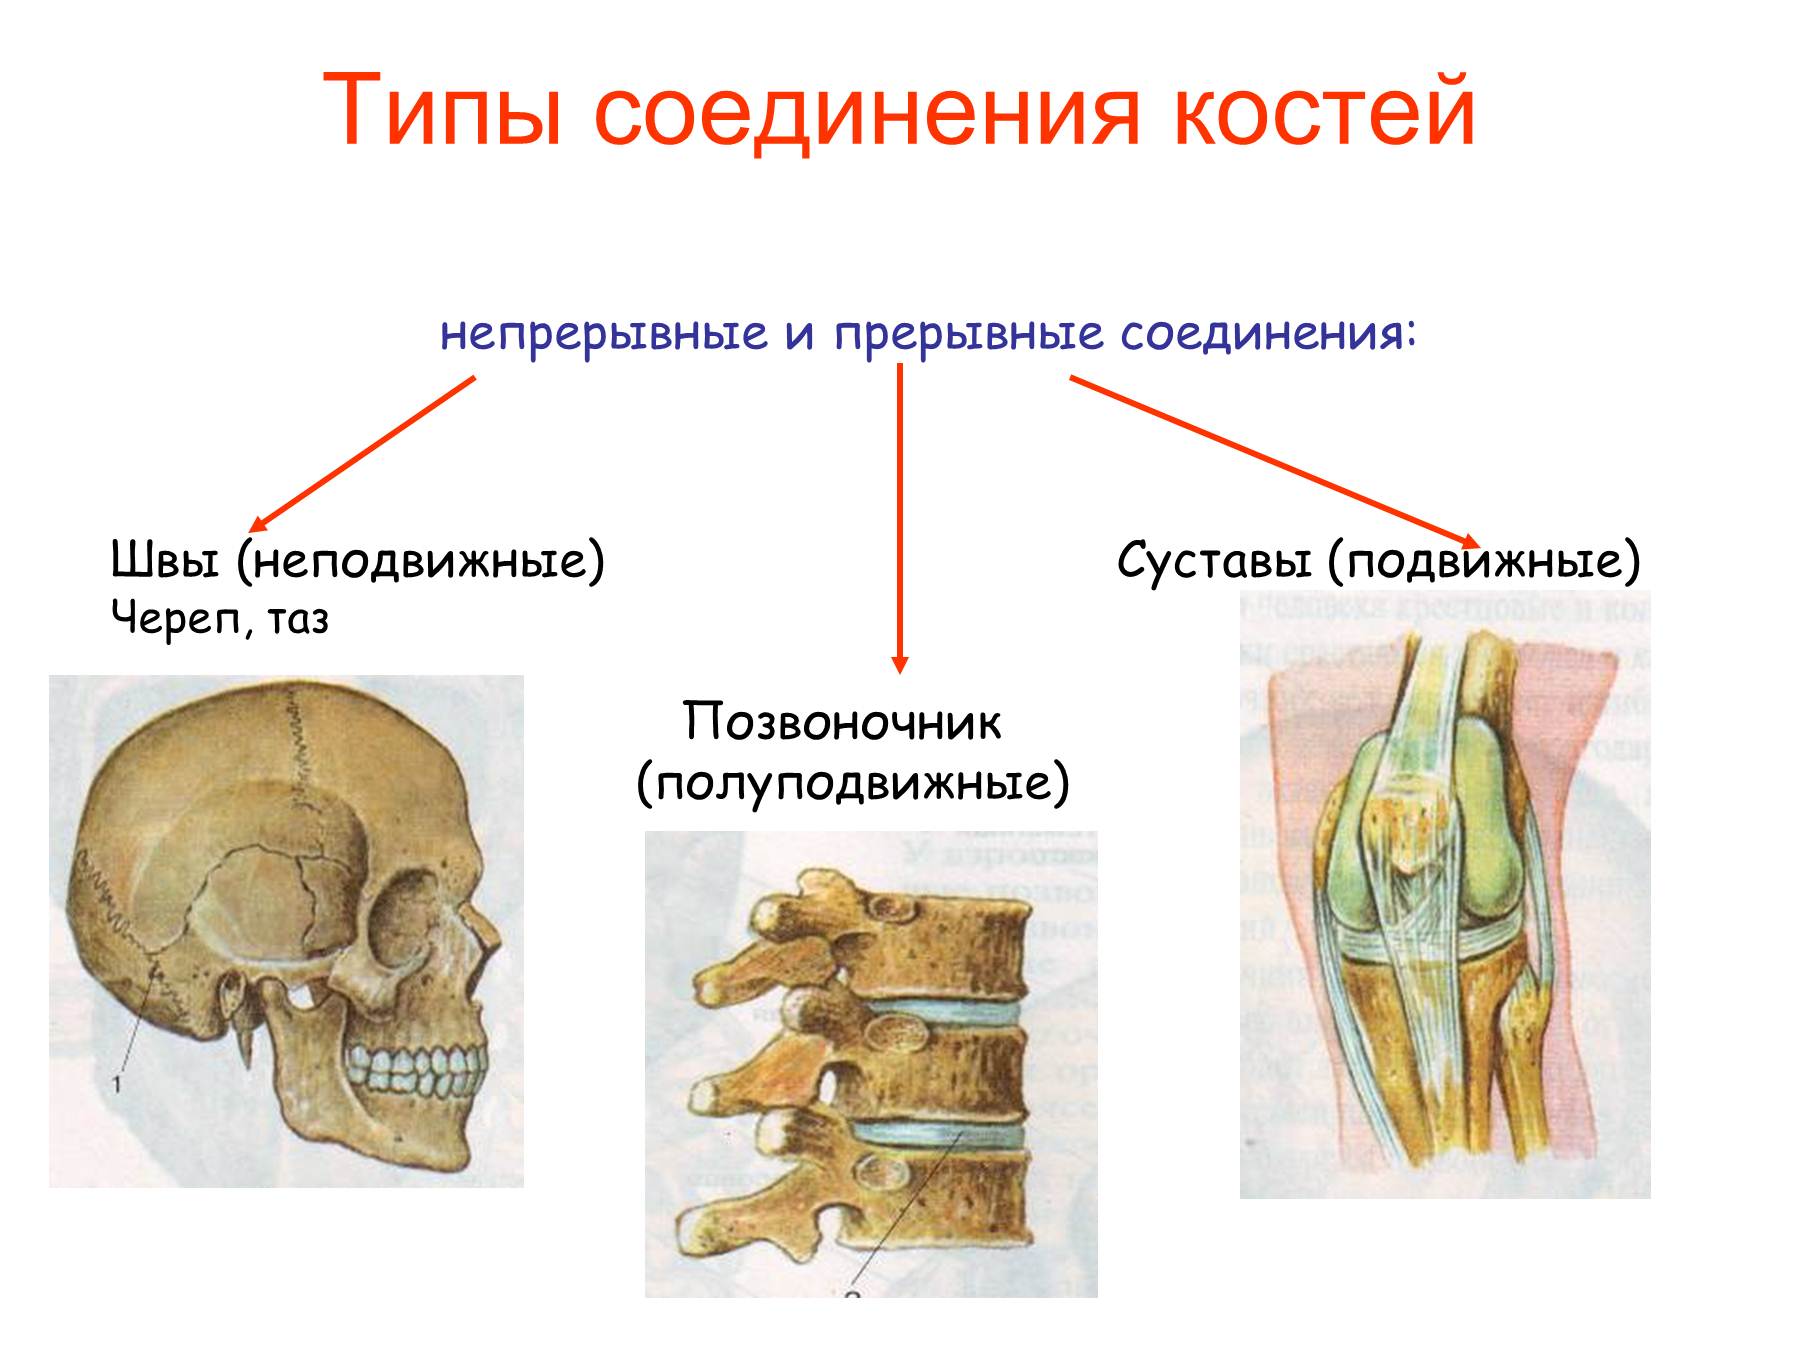 Кости скелета человека соединены неподвижно. Соединение костей человека непрерывные прерывные. Подвижное полуподвижное и неподвижное соединение костей. Соединения костей непрерывные прерывные симфизы. Неподвижные полуподвижные и подвижные соединения костей.